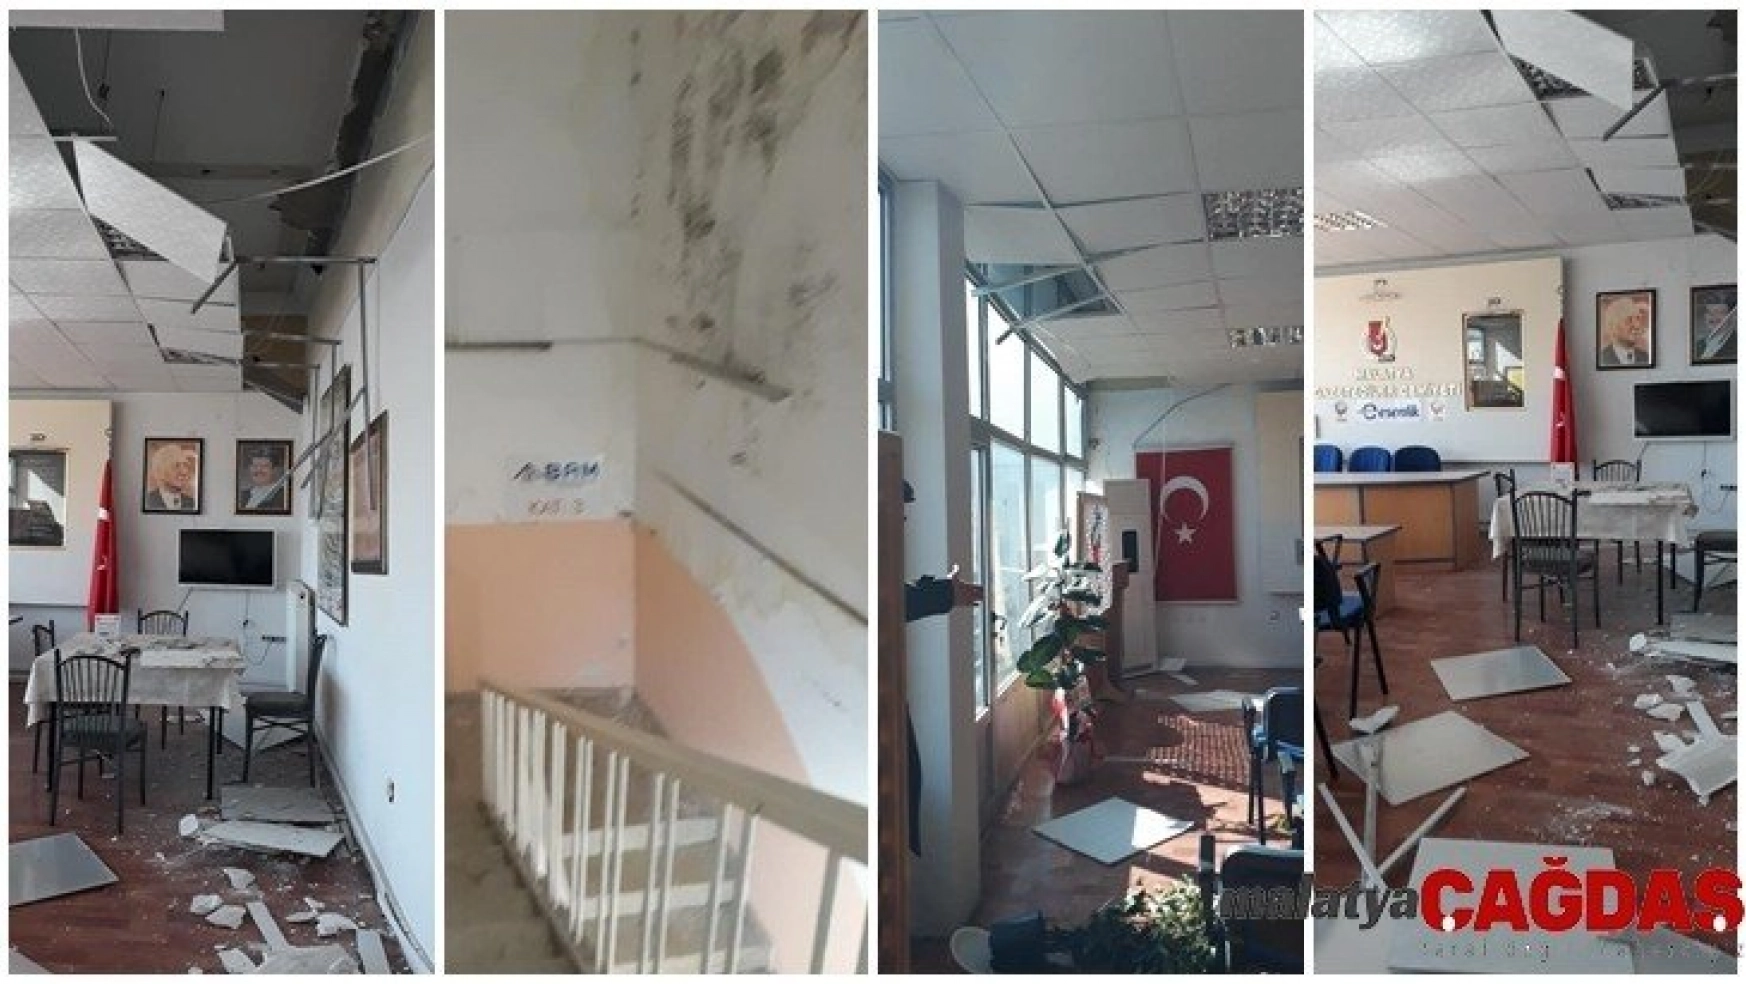 Malatya Gazeteciler Cemiyeti Binası Hasar Gördü